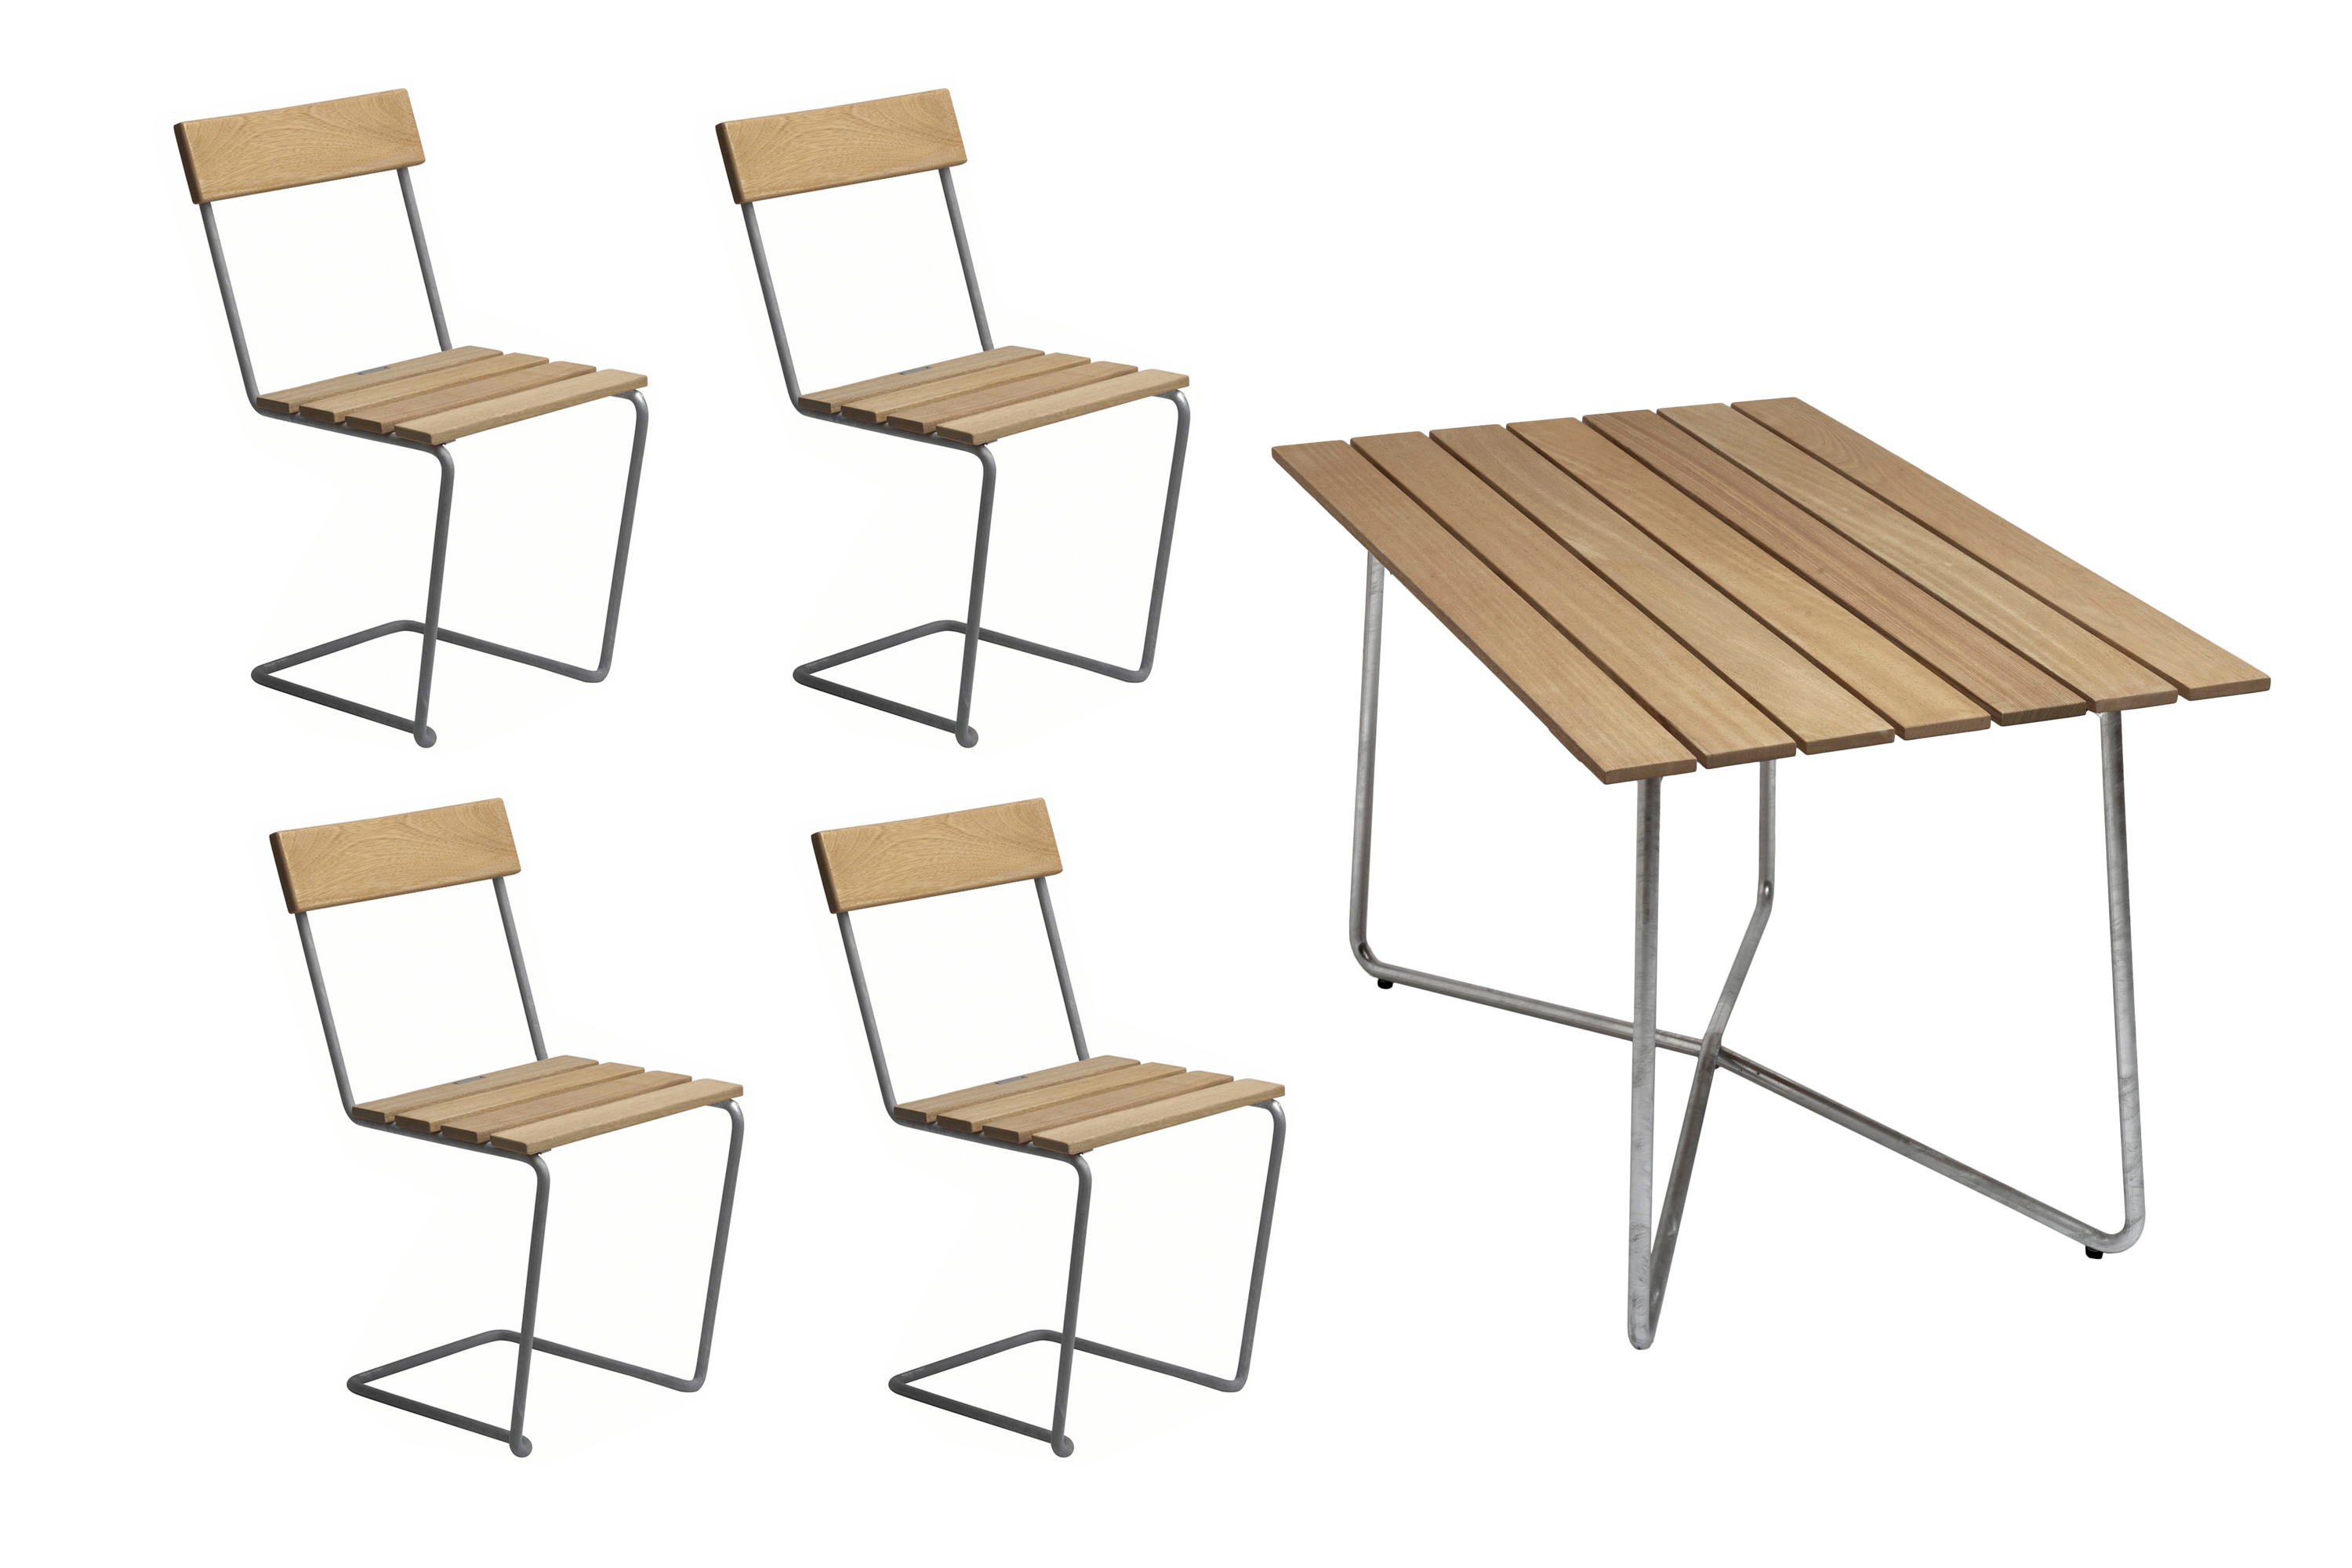 Grythyttan Stålmöbler B25 spisebordsæt Oljert eik/galvaniseret stål 4 stole & bord 120 x 70 cm